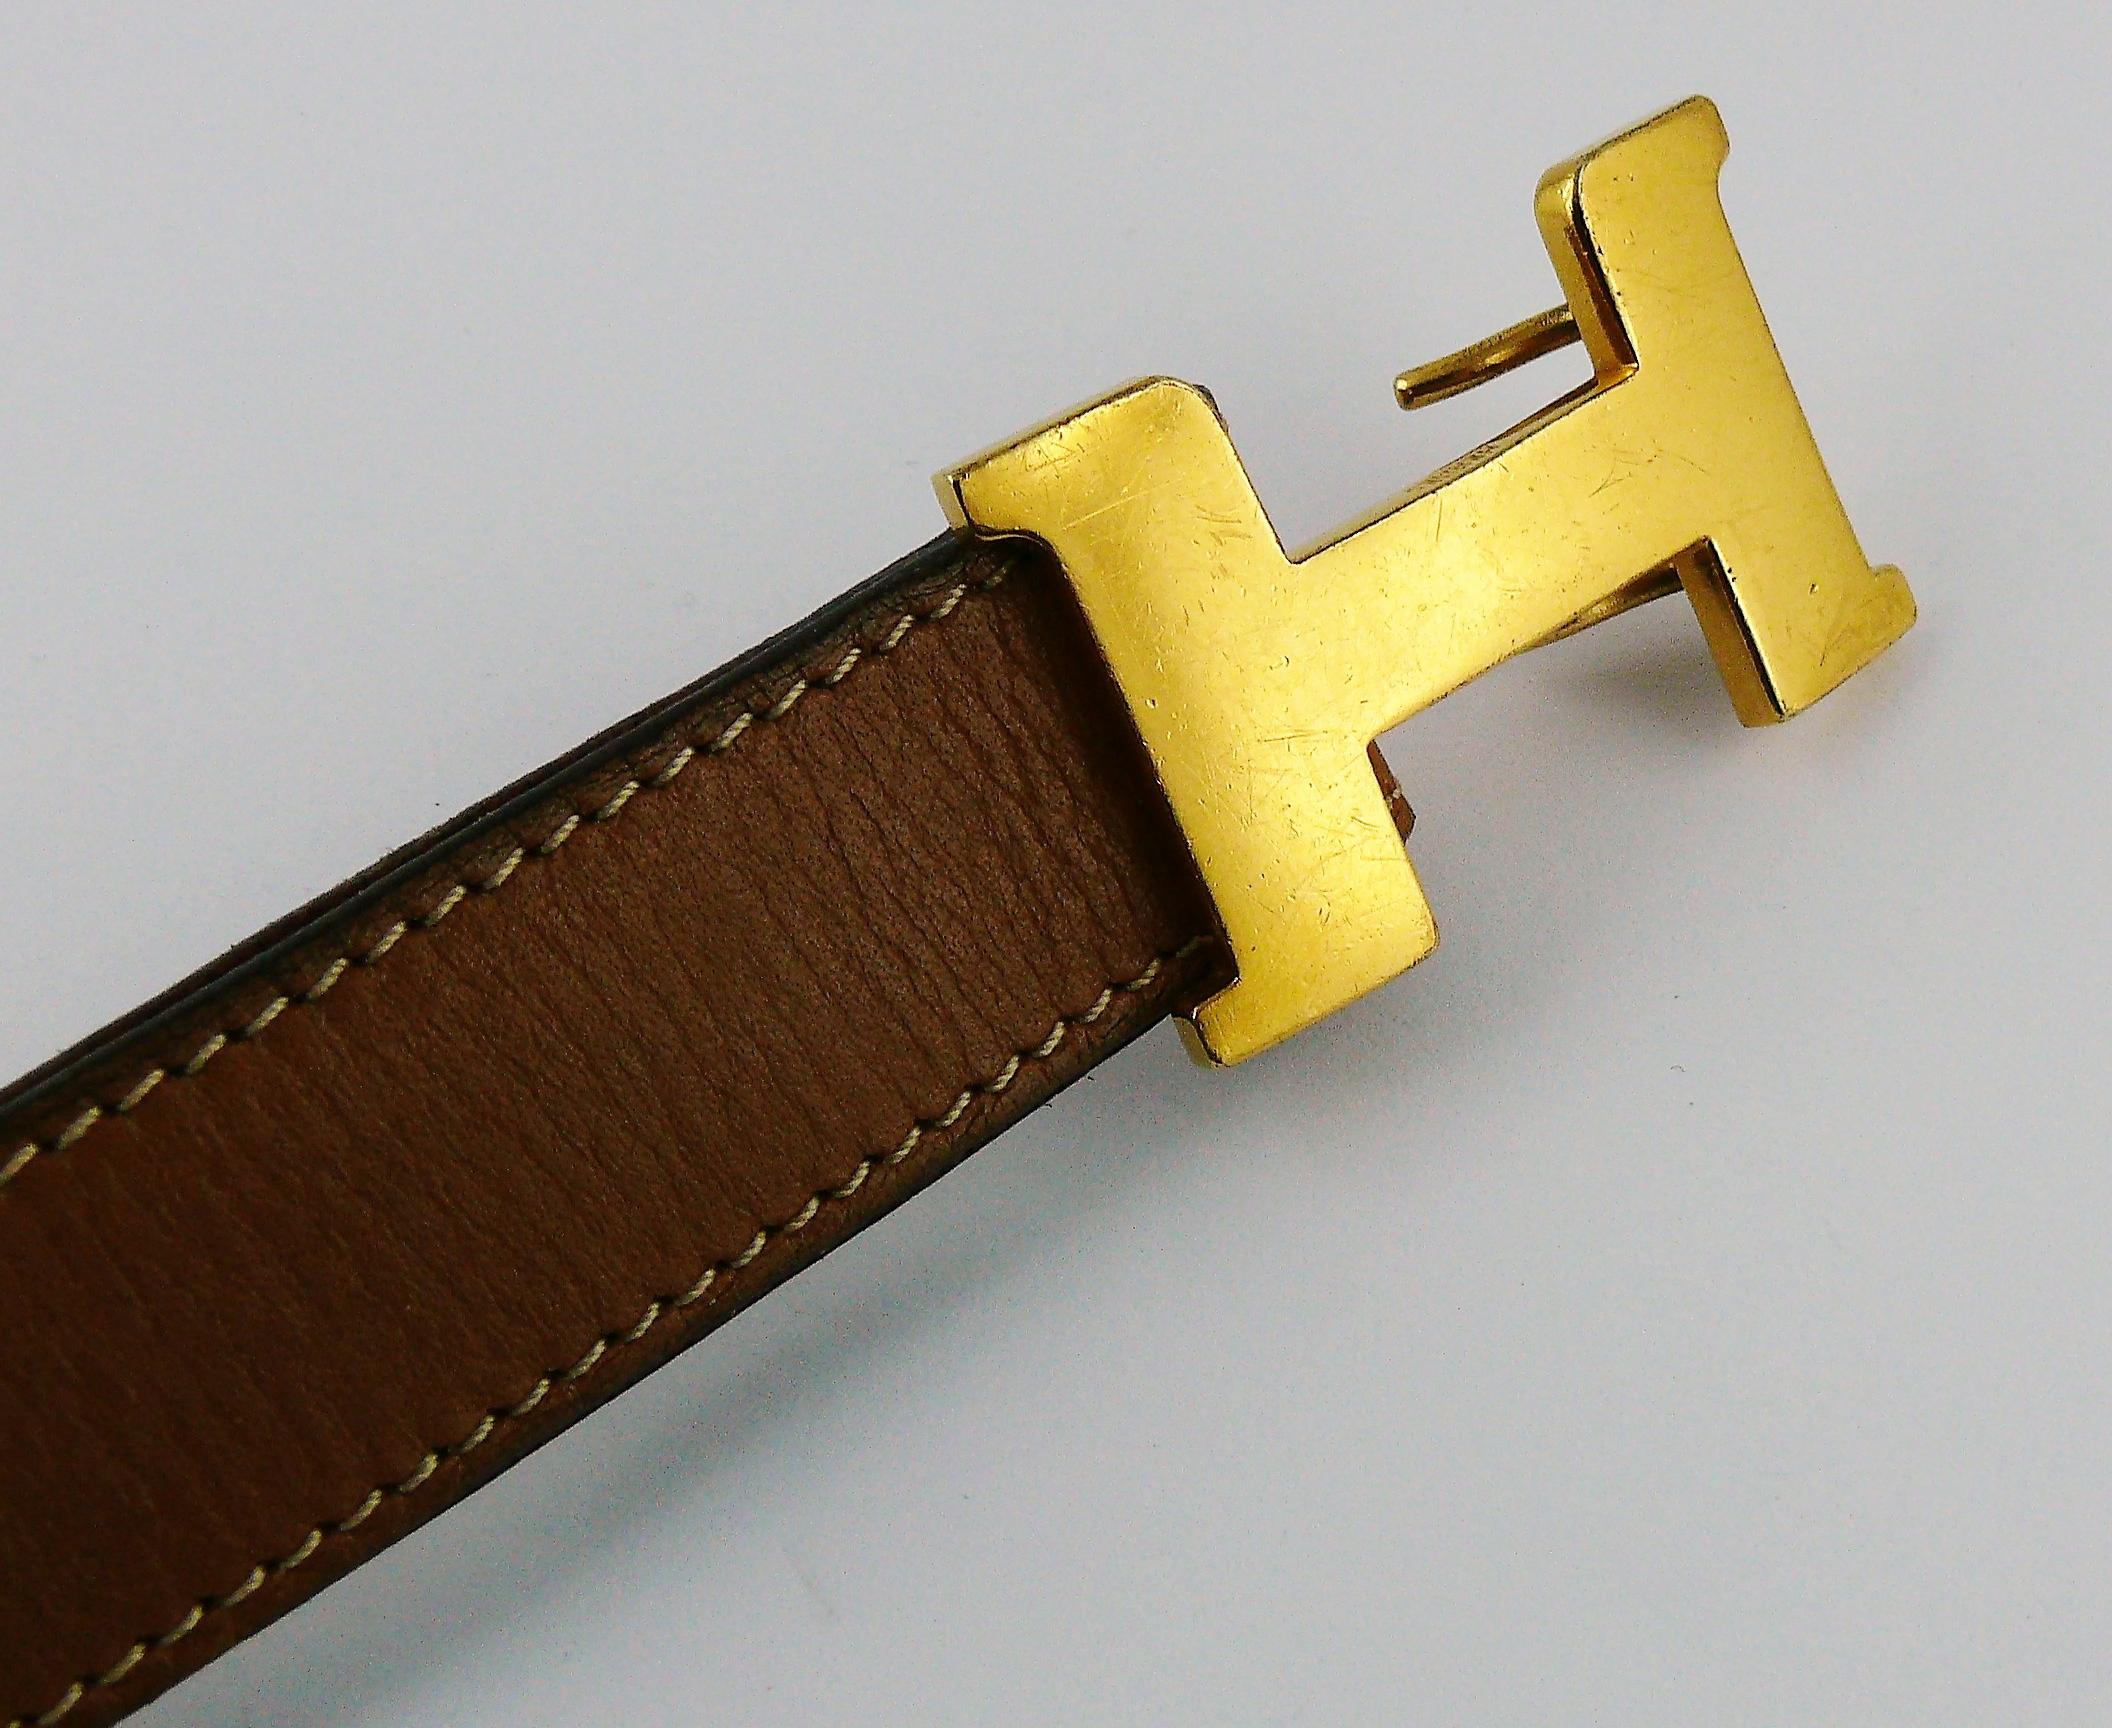 vintage hermes belt